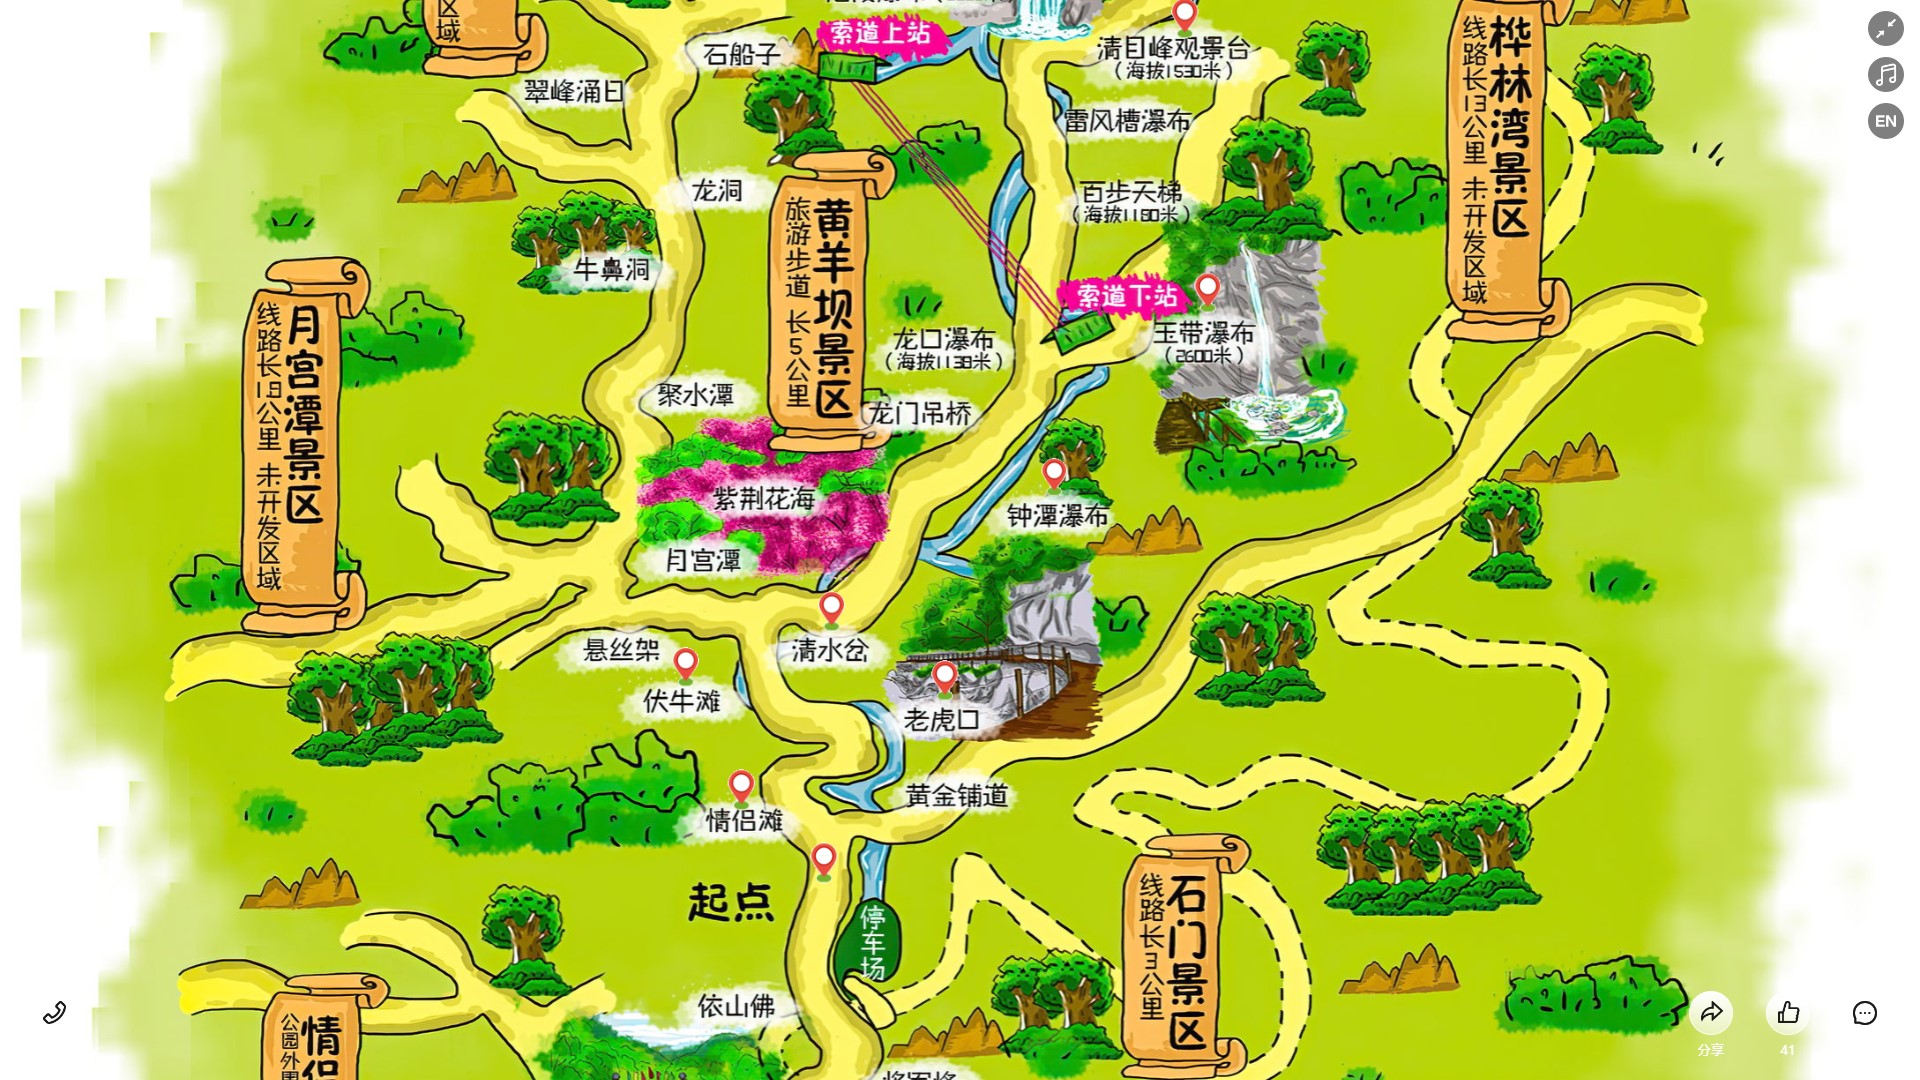 桐城景区导览系统